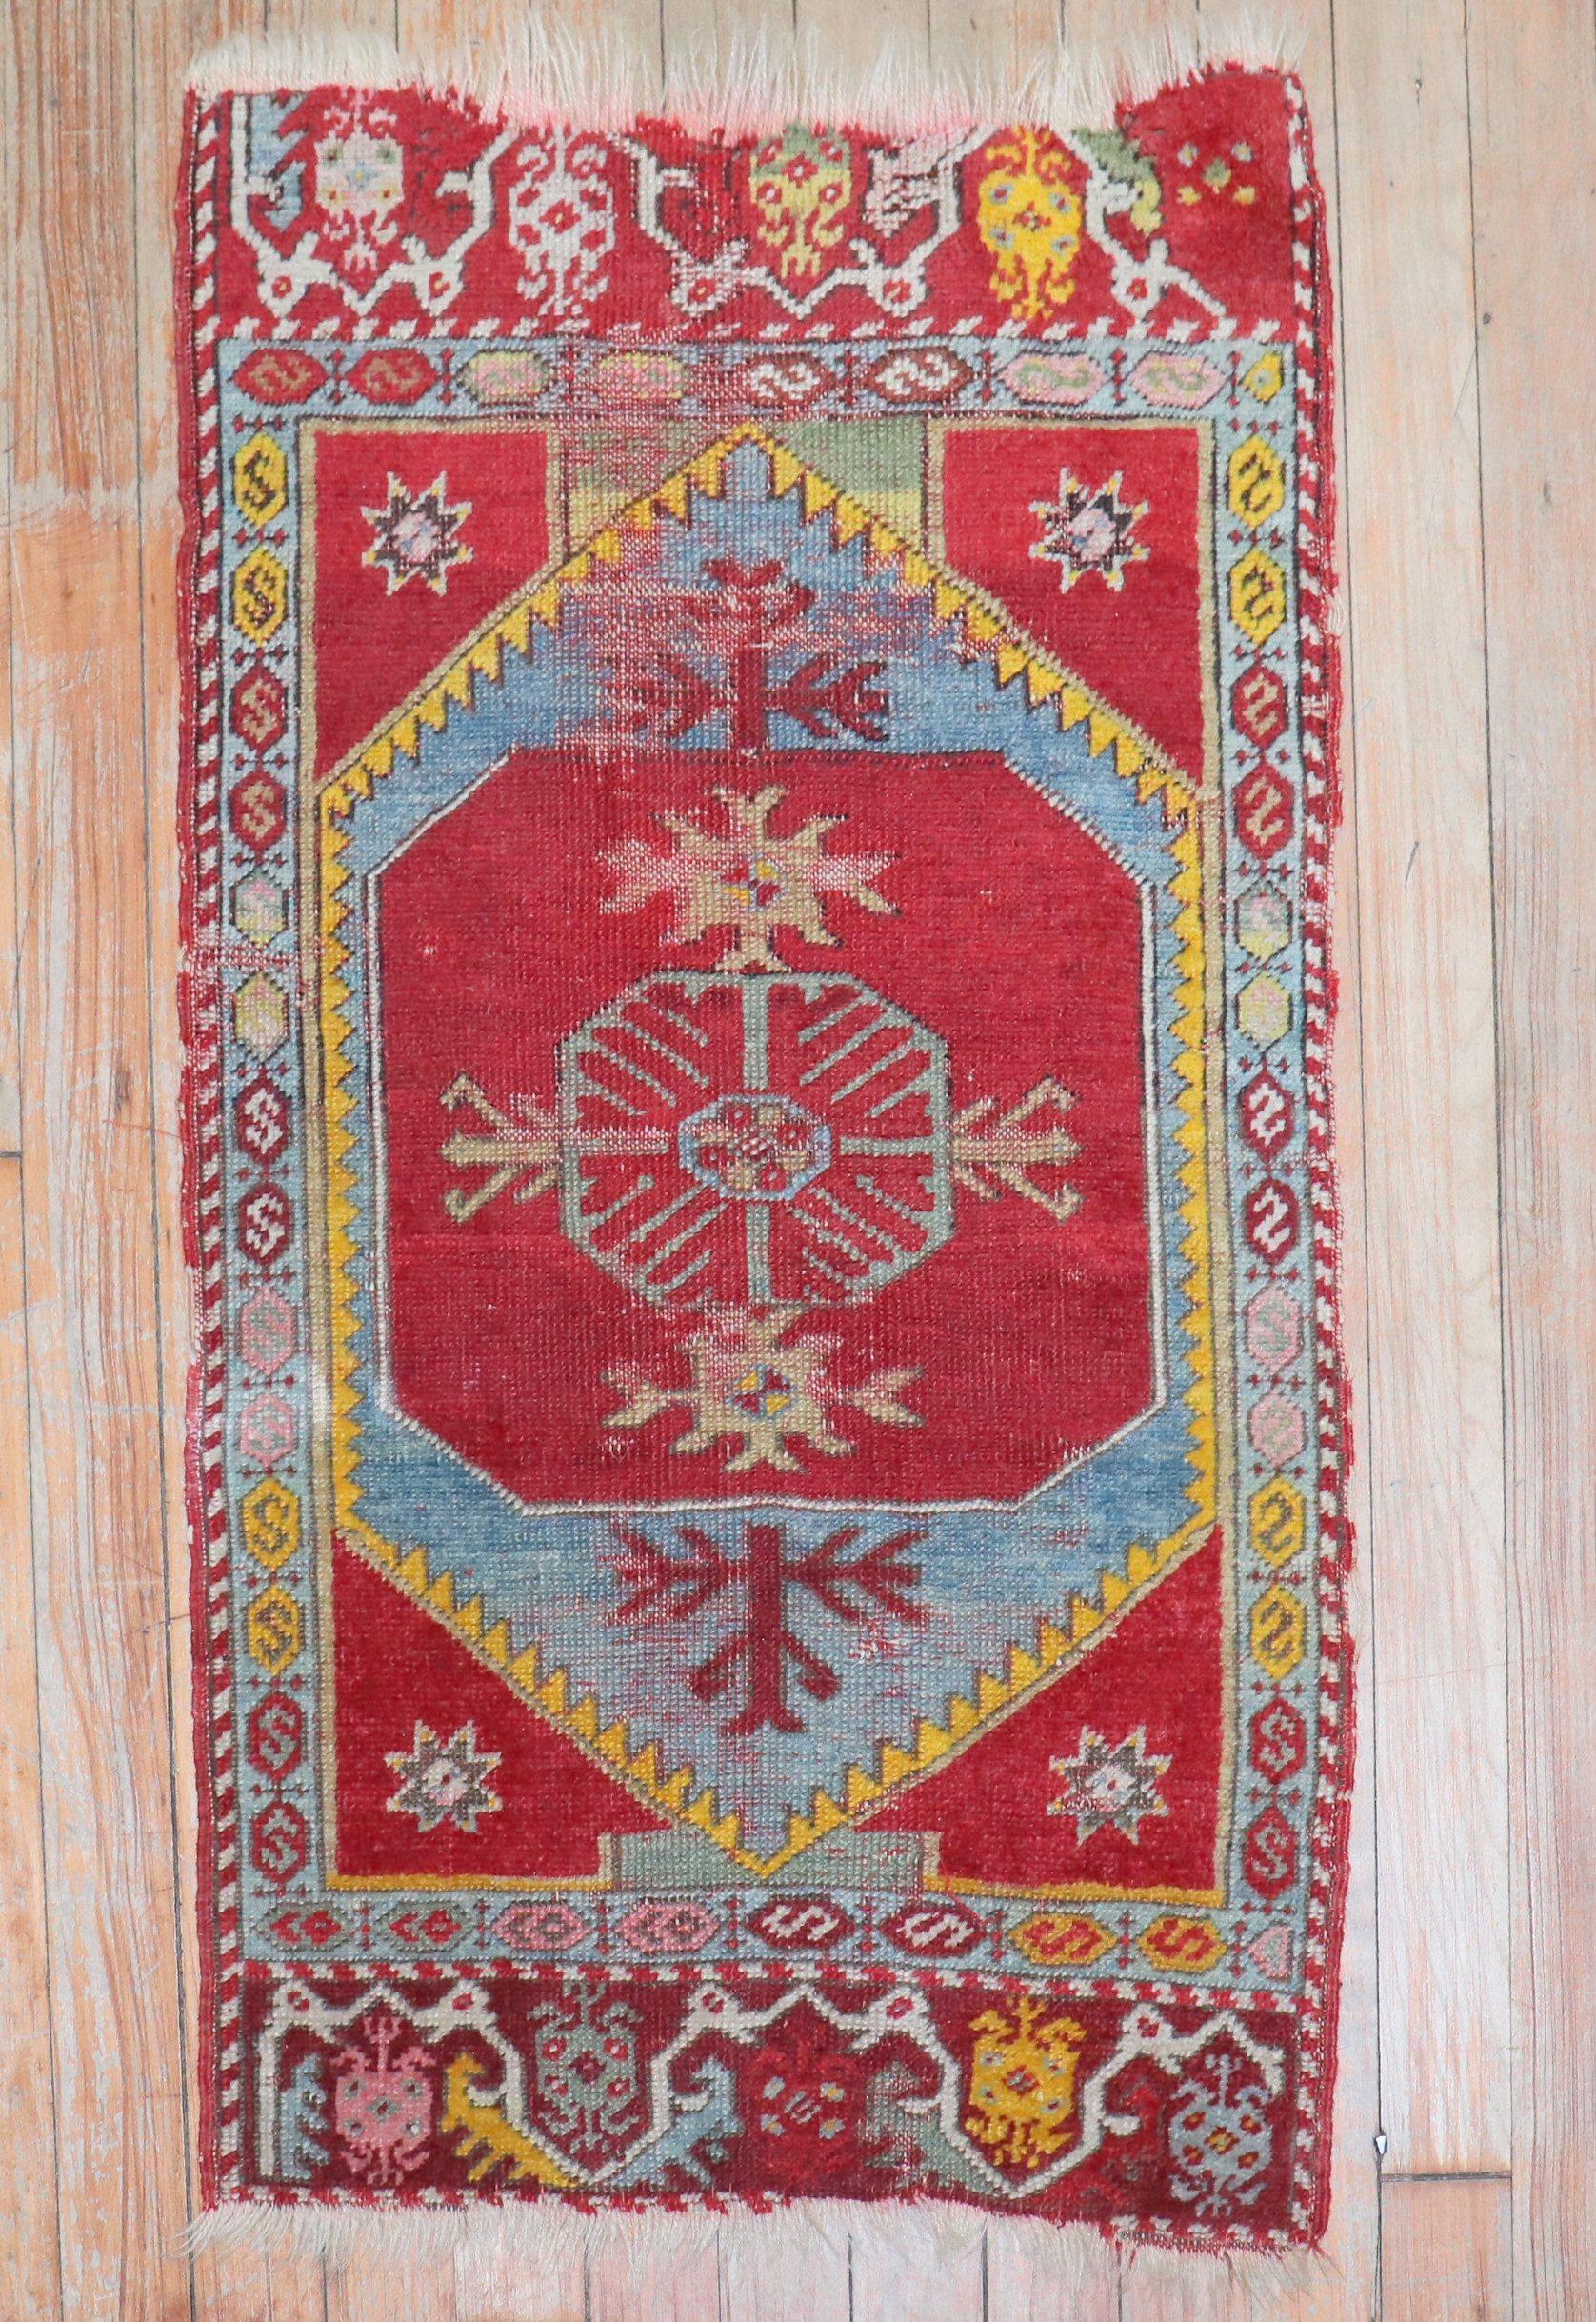 Tapis coloré turc Yastik de la fin du 19e siècle

Mesures : 1'8'' x 2'10''.